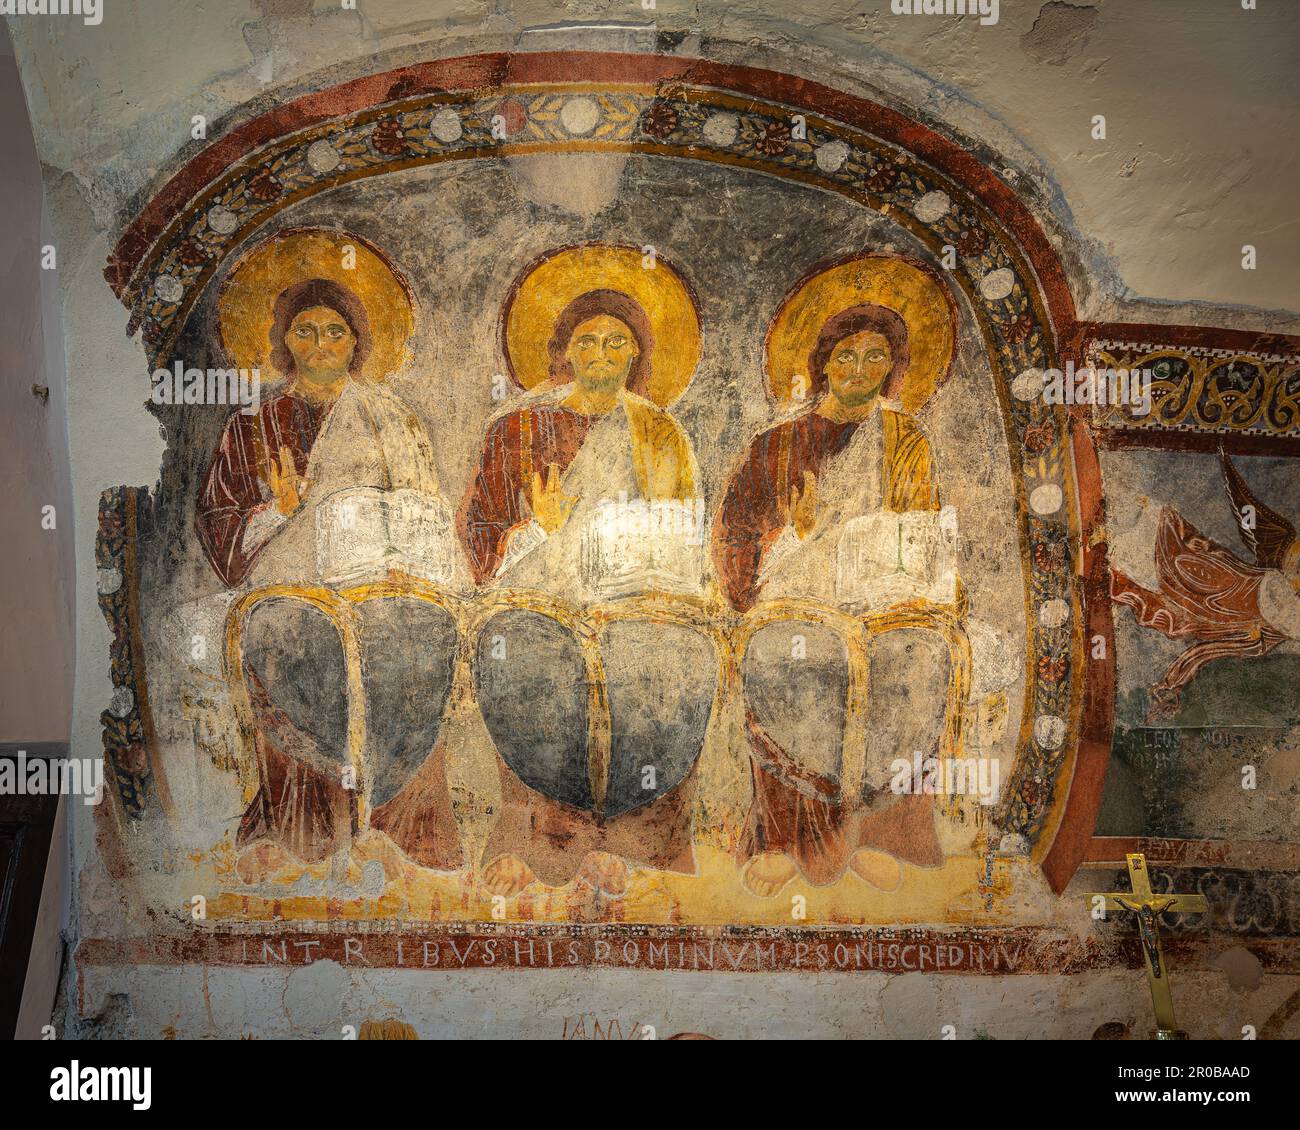 Das wertvollste Fresko, das die drei Personen darstellt. Die Kapelle, die das Bild beherbergt, repräsentiert die Dreifaltigkeit und evangelische Szenen. Vallepietra, Lazio Stockfoto